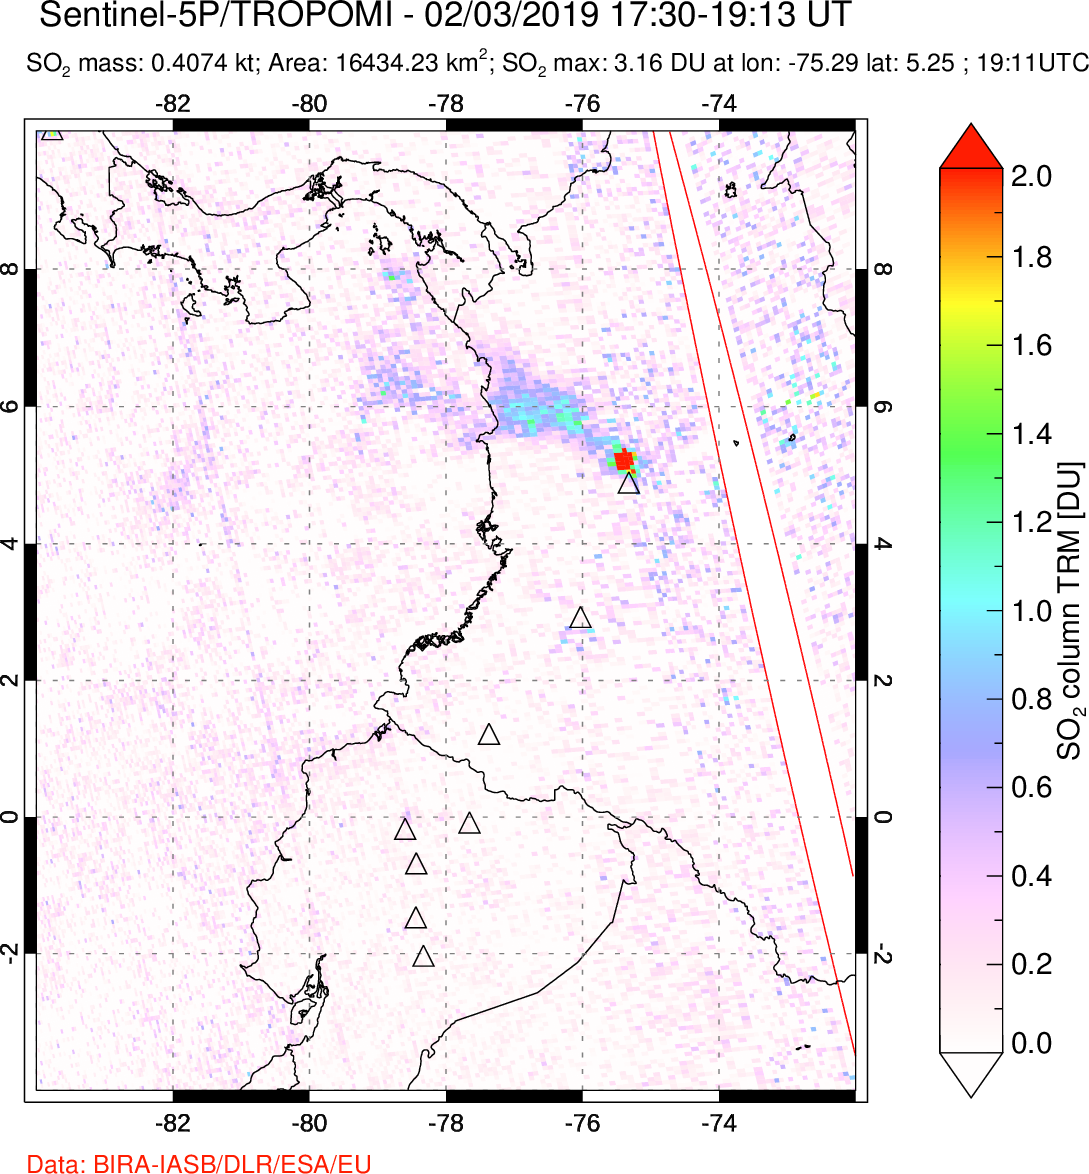 A sulfur dioxide image over Ecuador on Feb 03, 2019.